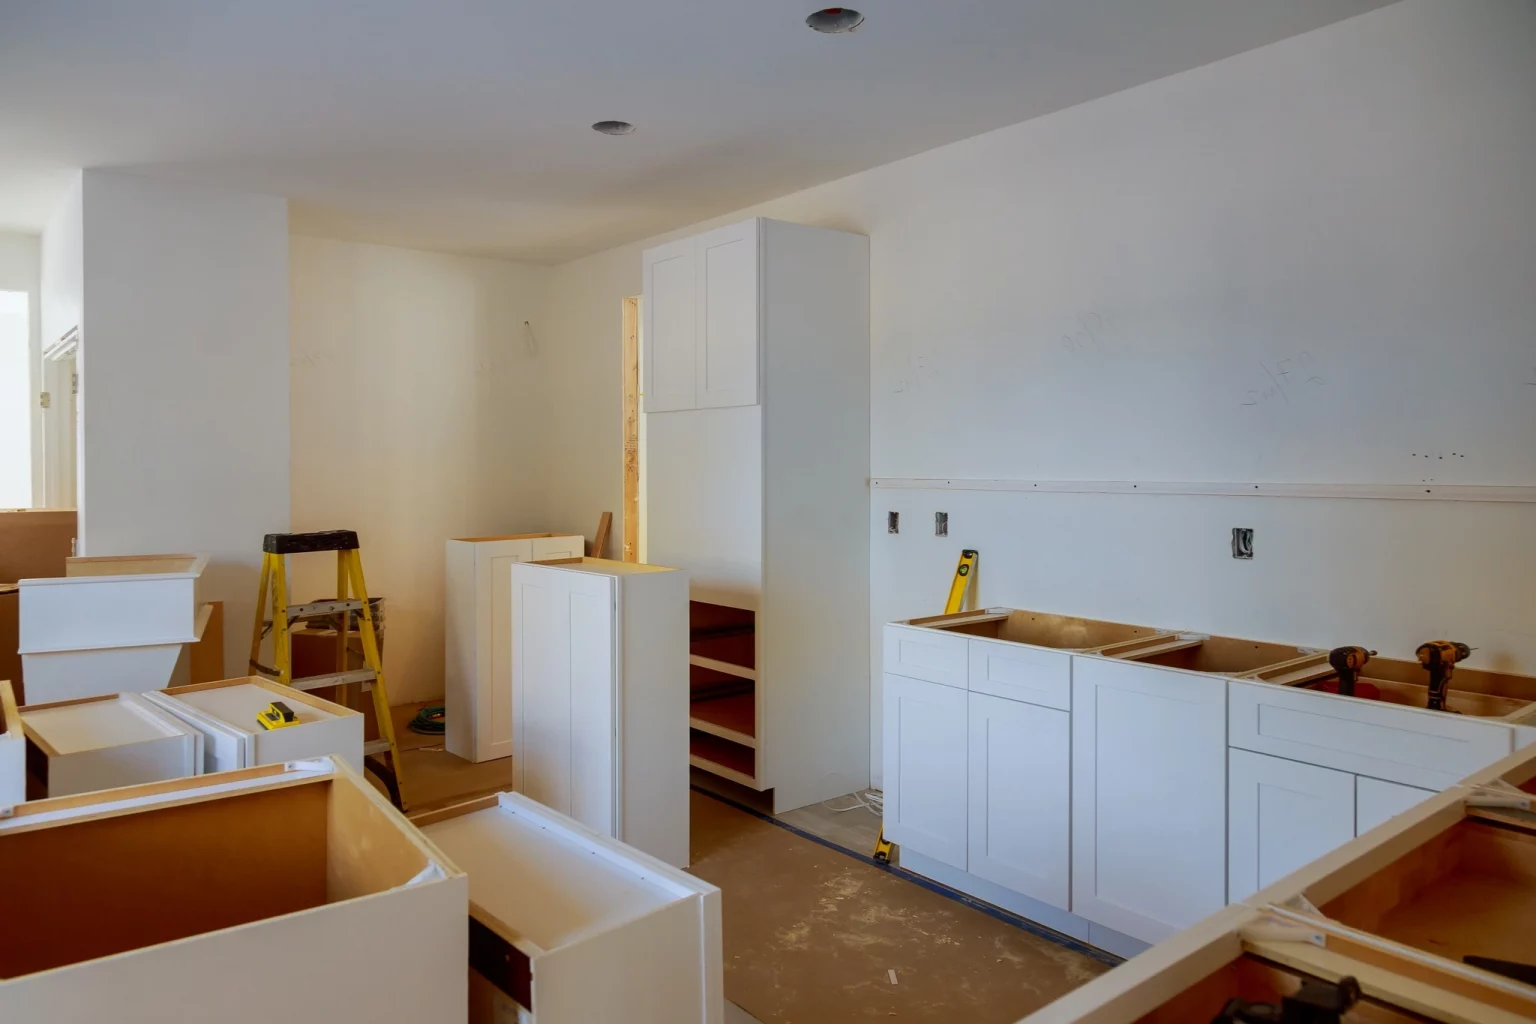 Cuisine en cours de rénovation montrant des armoires blanches partiellement installées et un espace ouvert, illustrant le processus de modernisation d'intérieur.